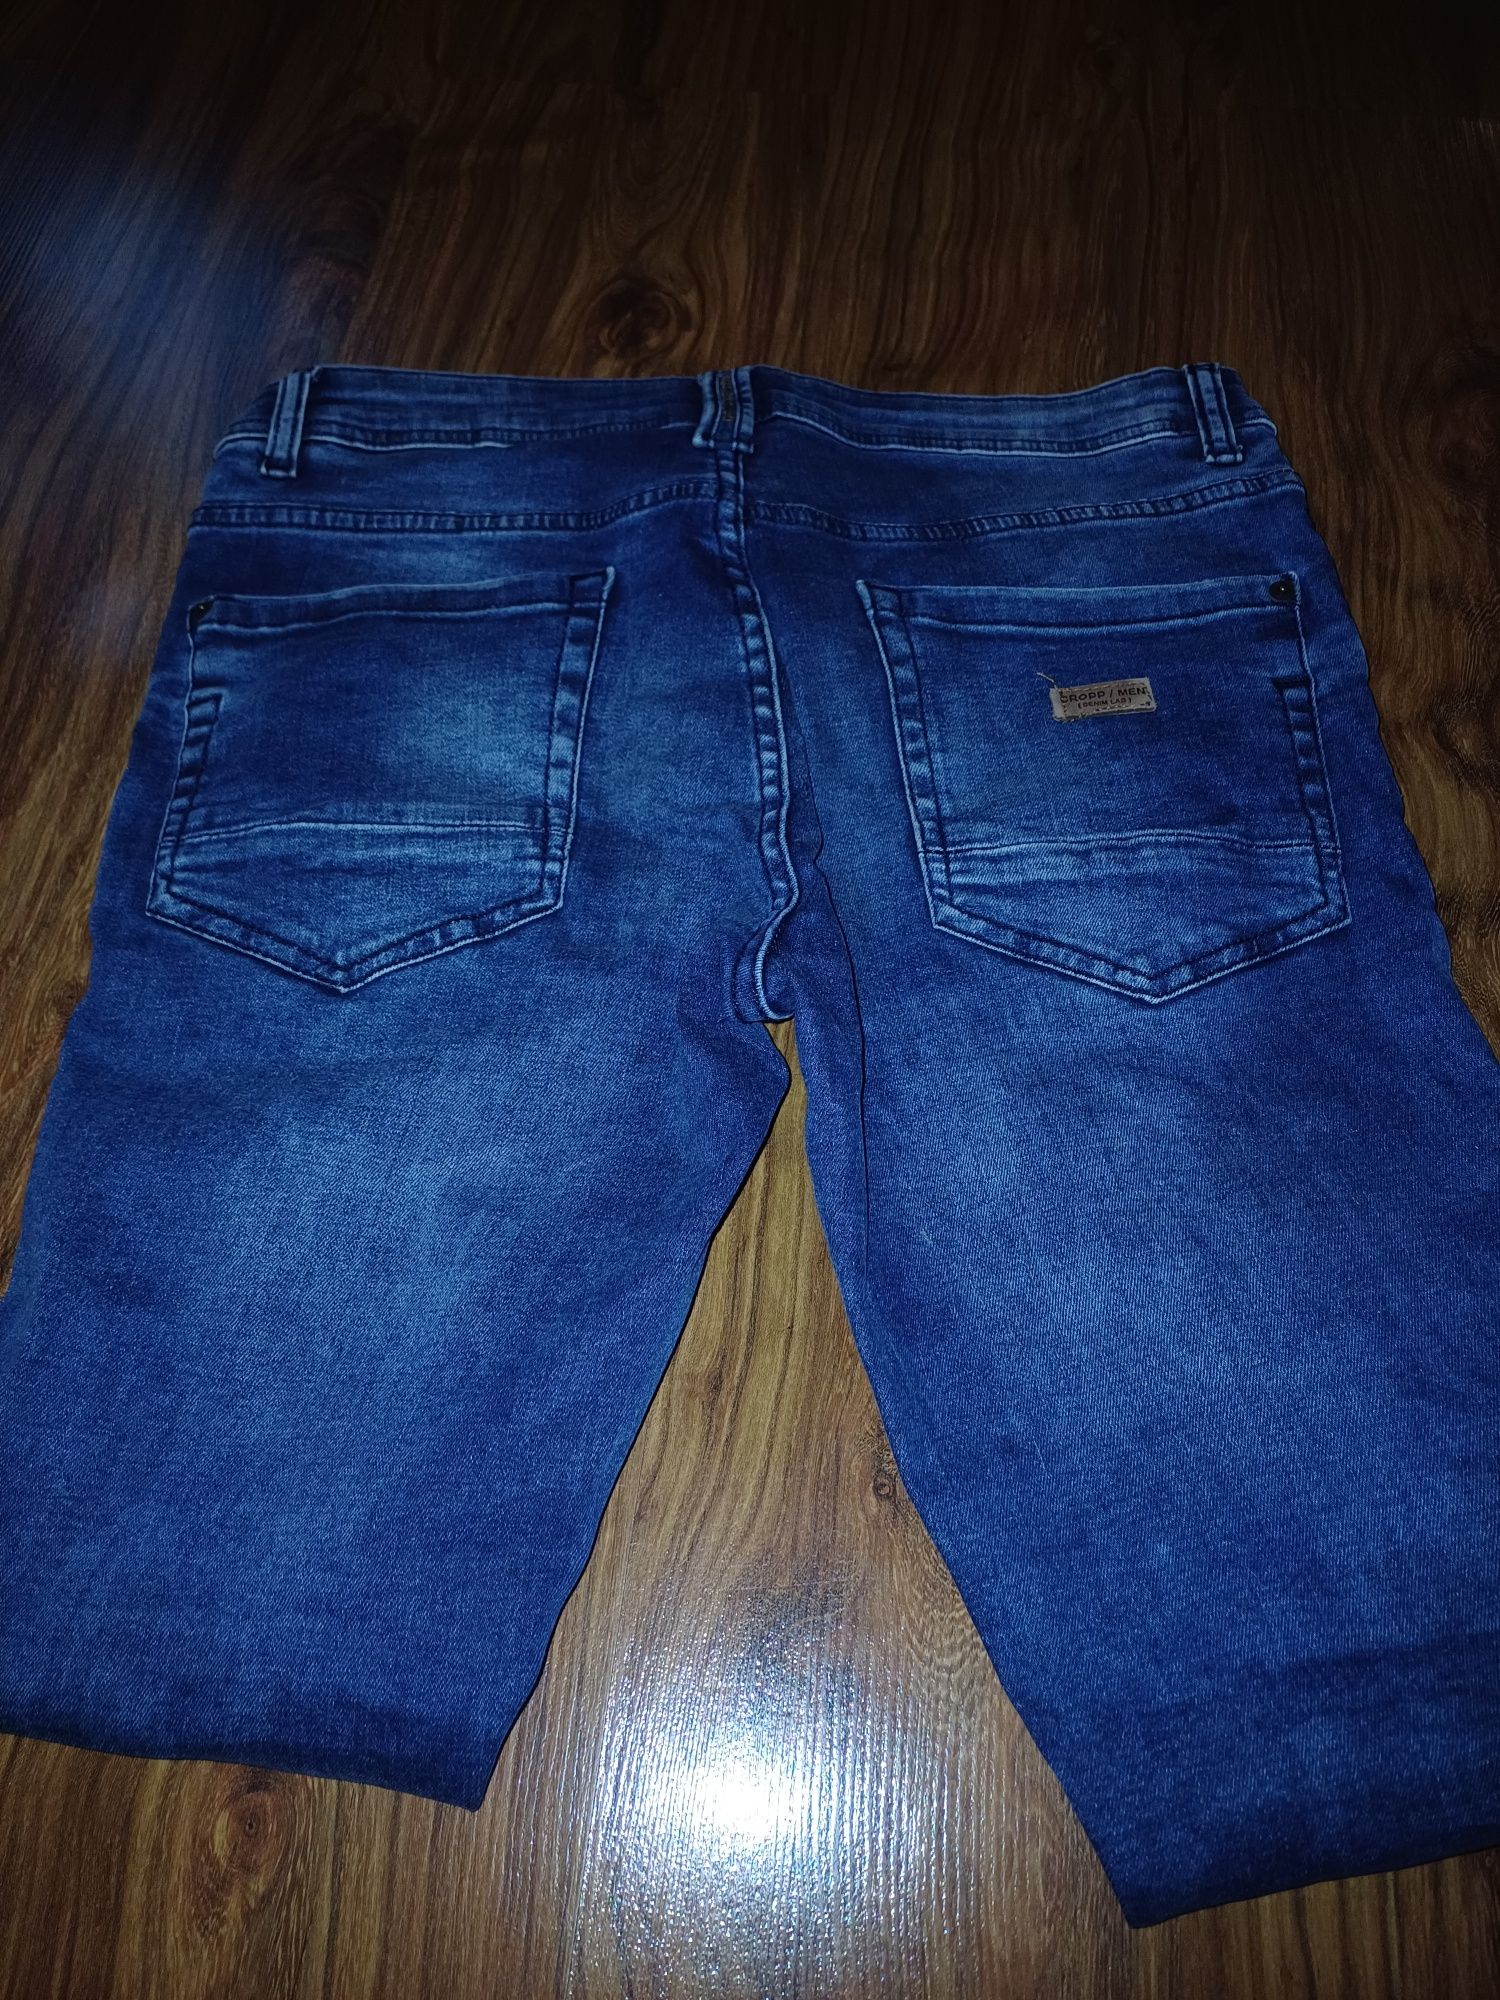 Spodnie jeansowe 30/32 jak nowe